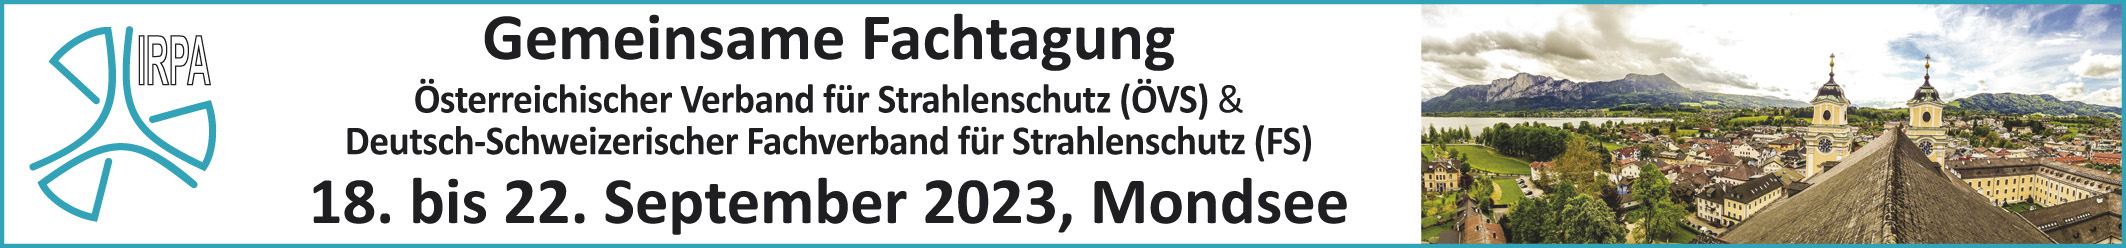 Gemeinsame Fachtagung des Österr. Verbandes für Strahlenschutz (ÖVS) und Deutsch-Schweizerischer Fachverband f. Strahlenschutz e.V (FS)